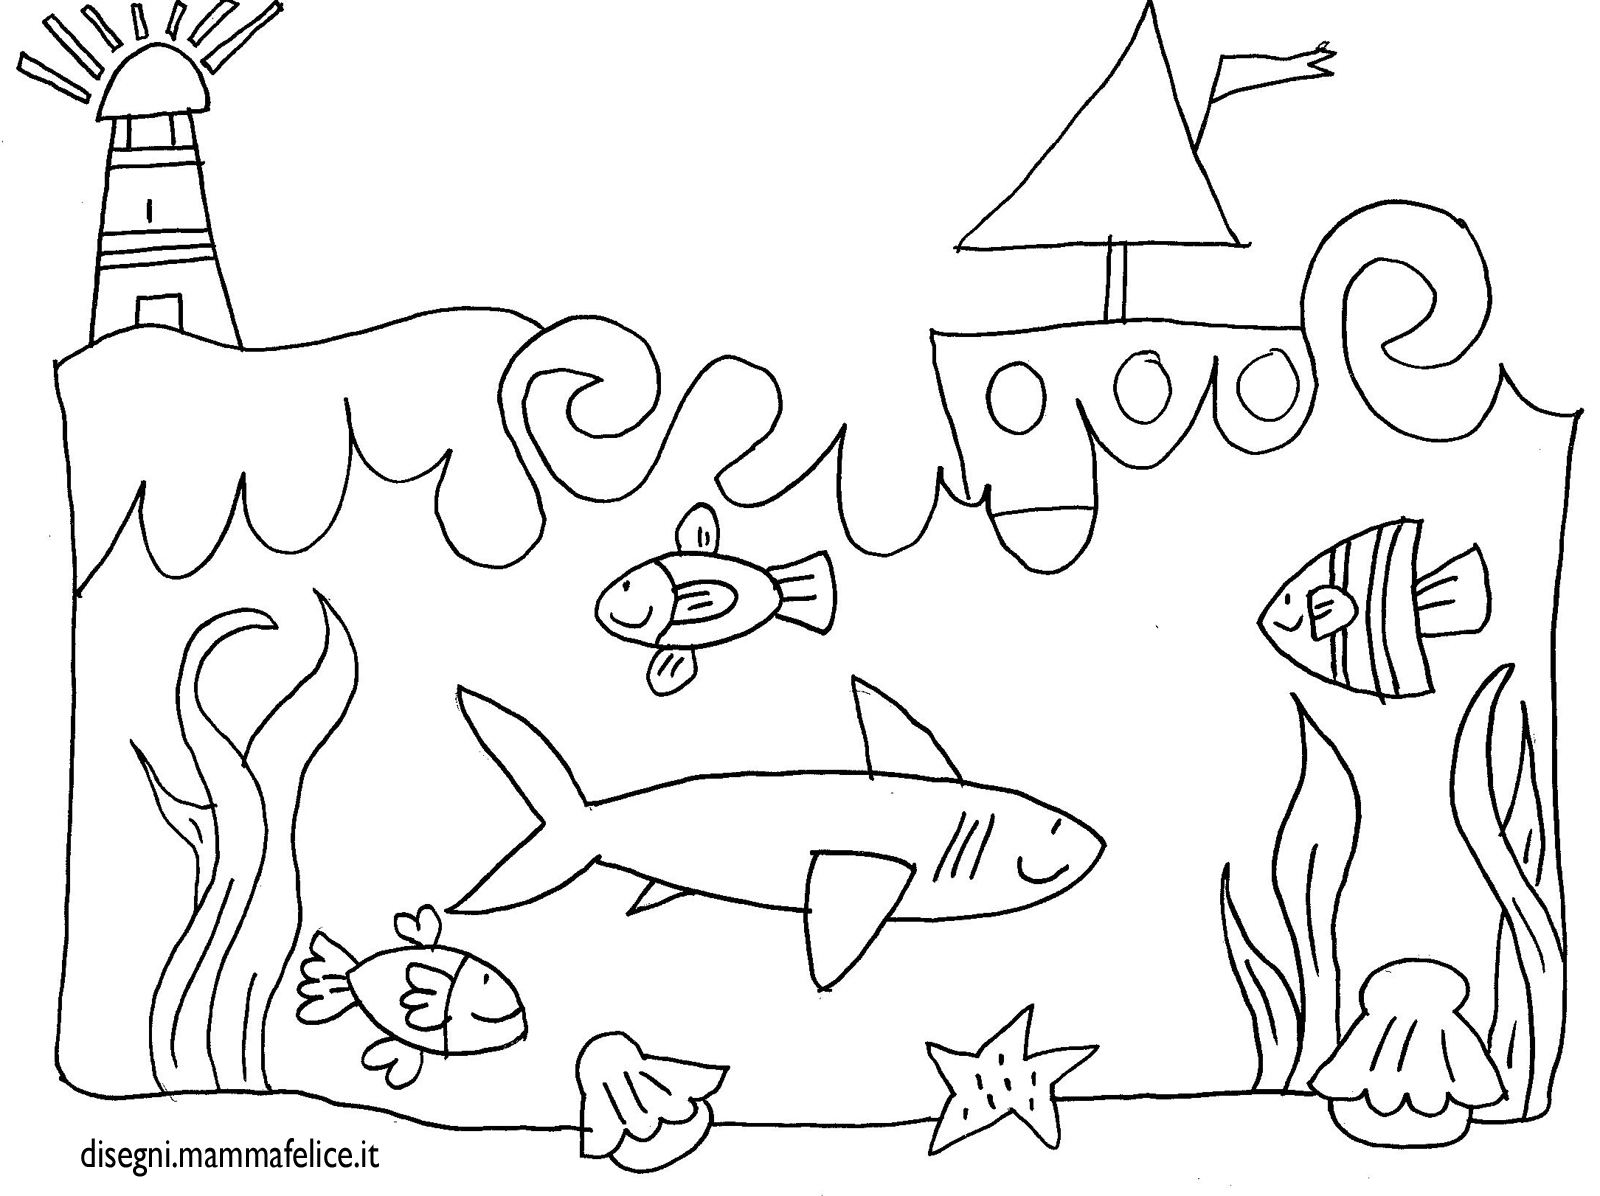 Disegno Per Bambini Da Colorare Gratis Mare Paesaggio Sottomarino Squalo Pesci Barca Disegni